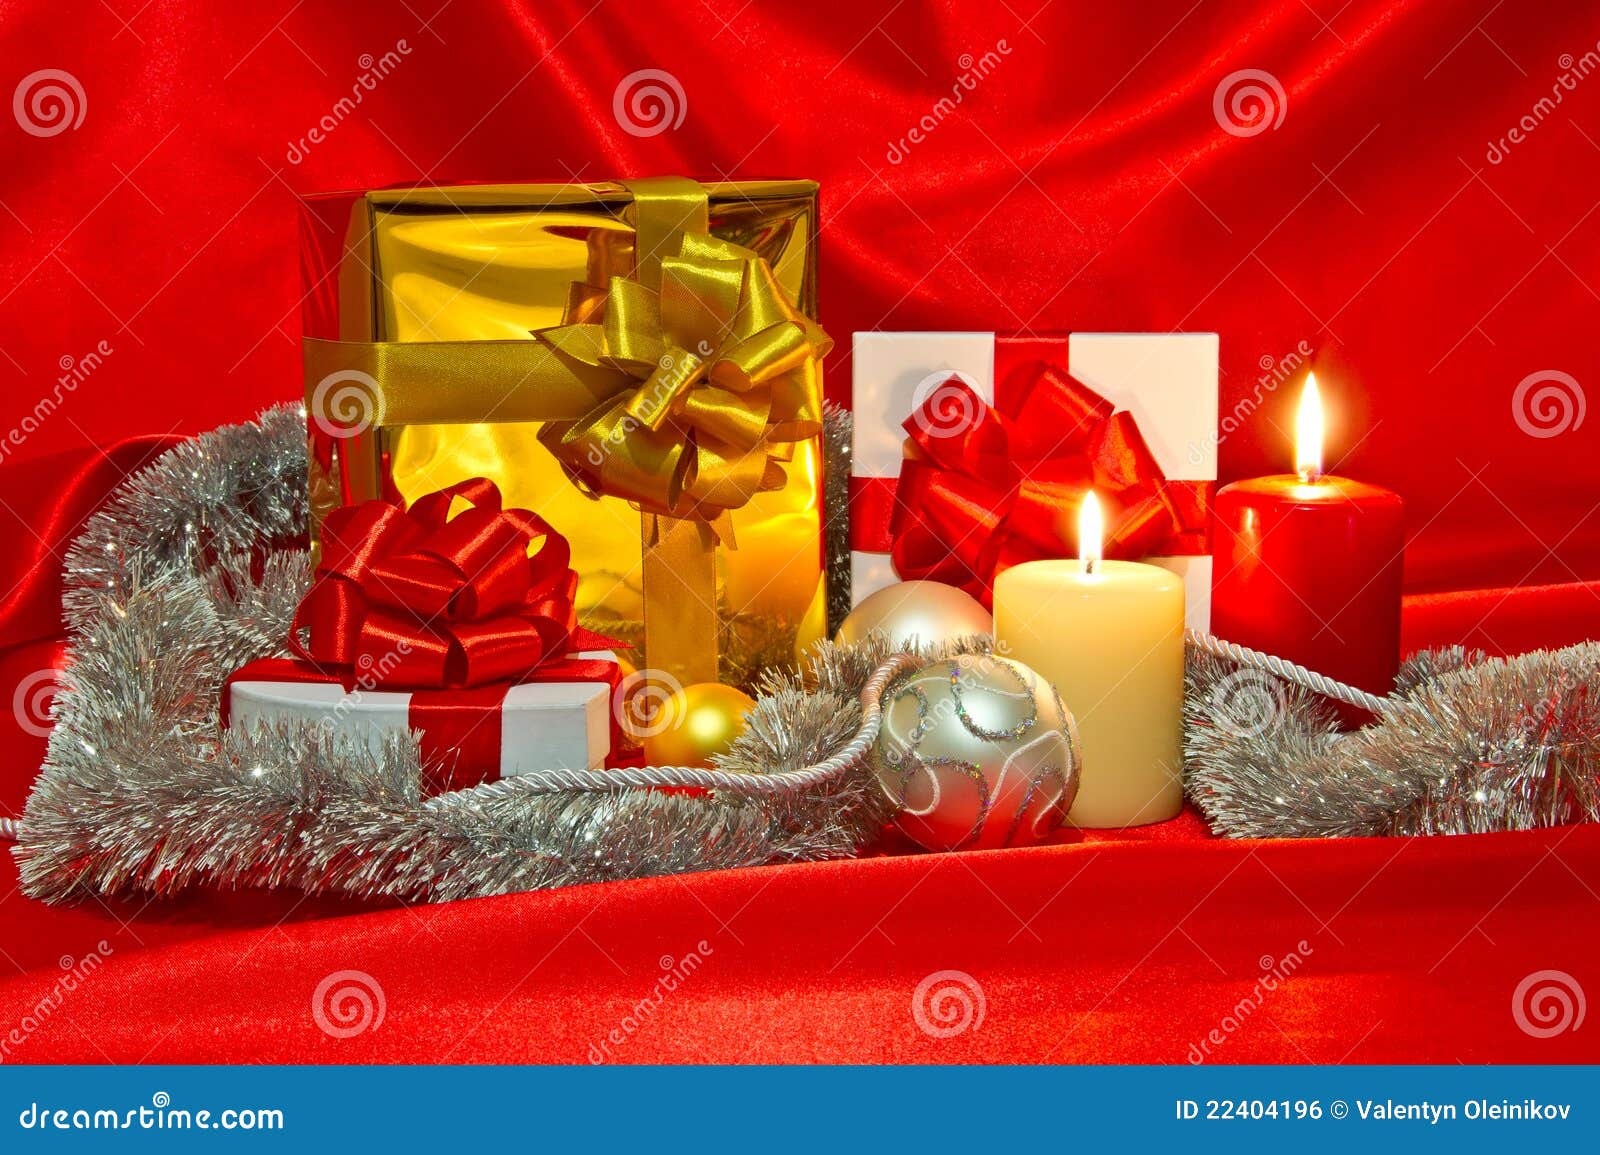 Año Nuevo, todavía de la Navidad vida. Vida del Año Nuevo (la Navidad) aún con los rectángulos de regalo, dos velas, satén rojo y decoraciones del Navidad-árbol